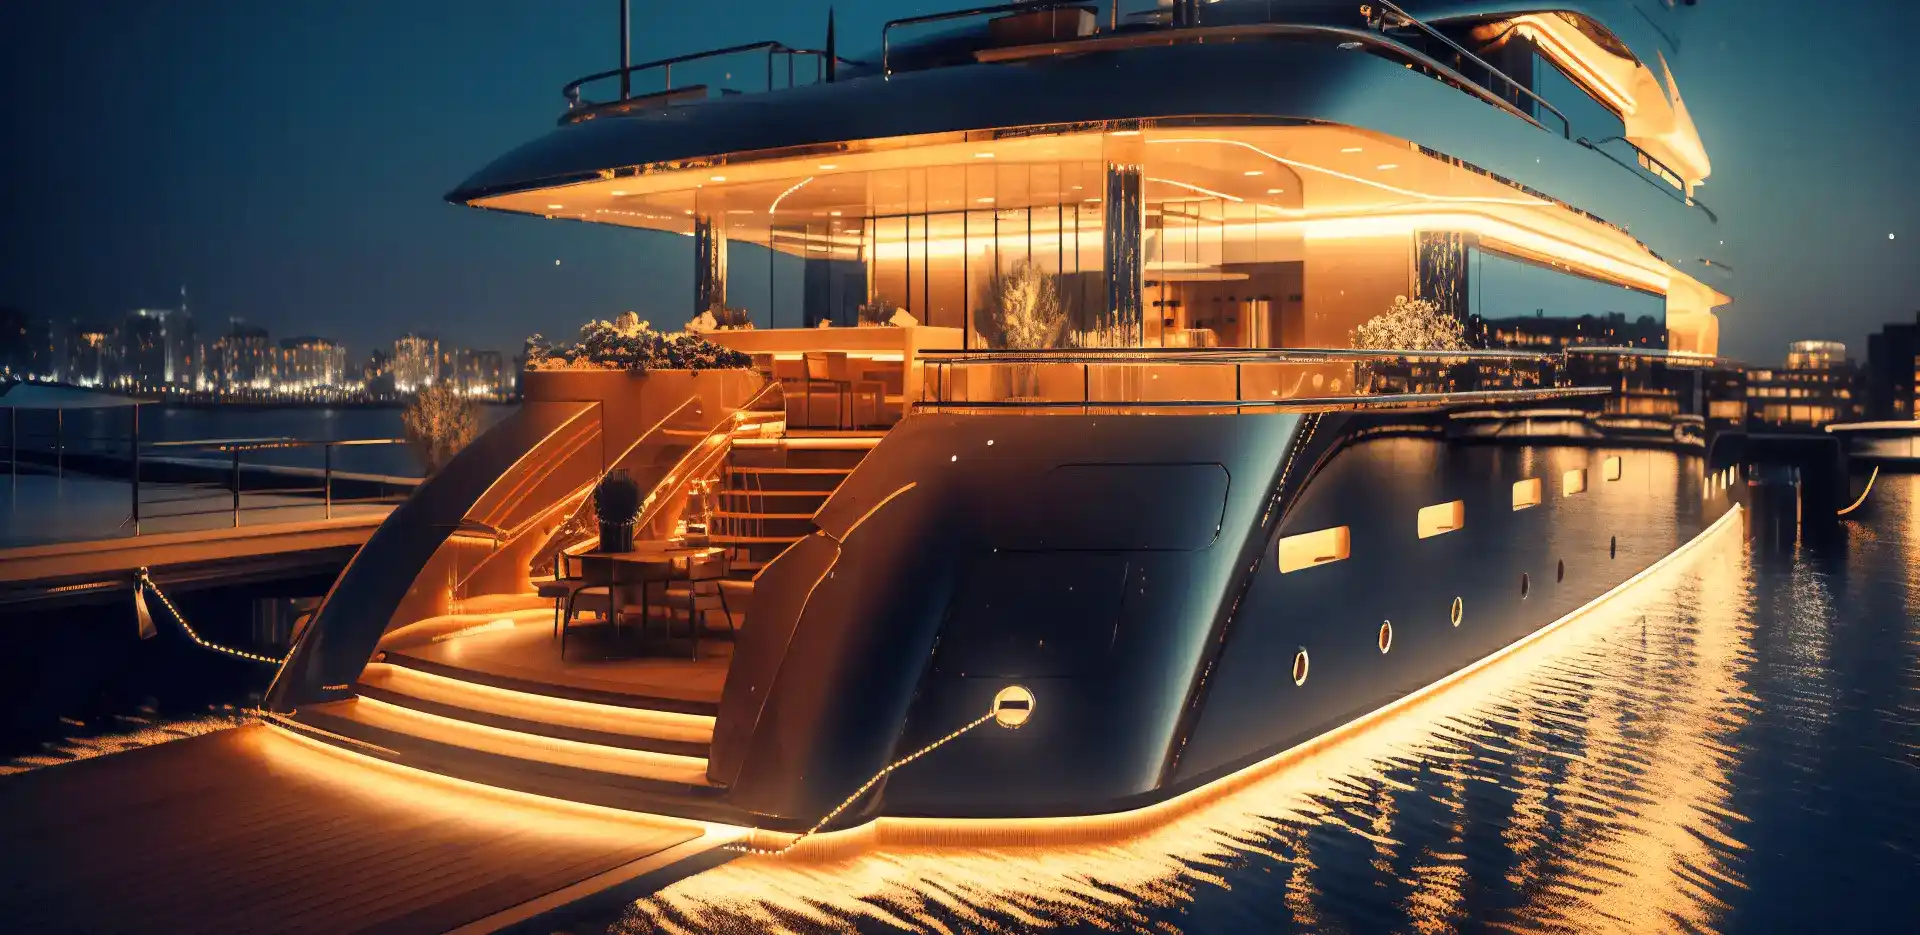 Ένα όμορφο φωτισμένο σκάφος μέσα στη θάλασσα σε νυχτερινό background.